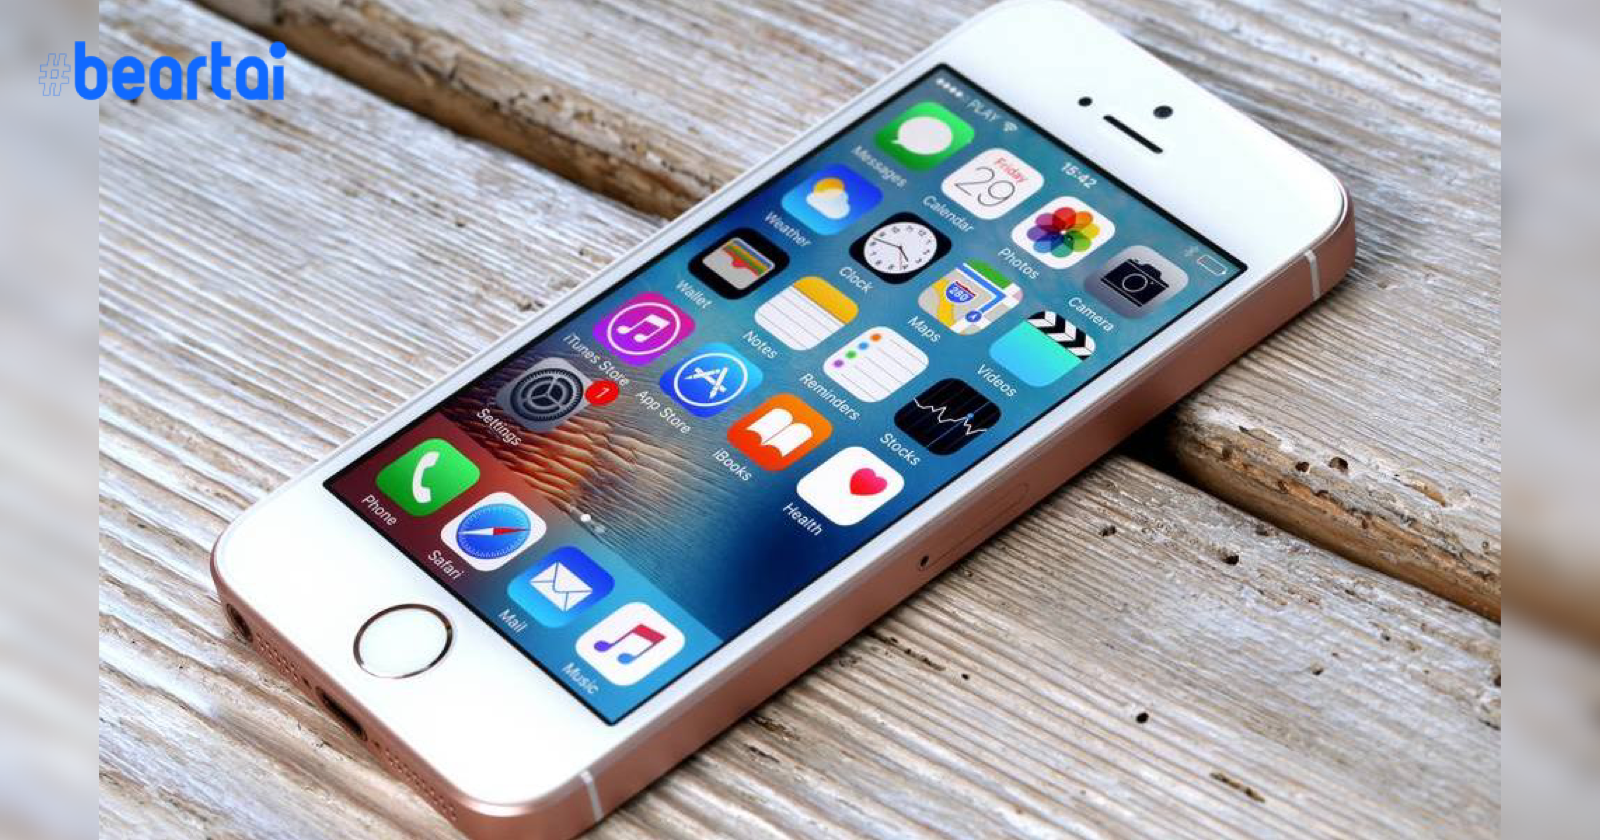 หลุดข้อมูลใหม่เผย iPhone SE, iPhone 6s จ่อได้ไปต่อใน iOS 14